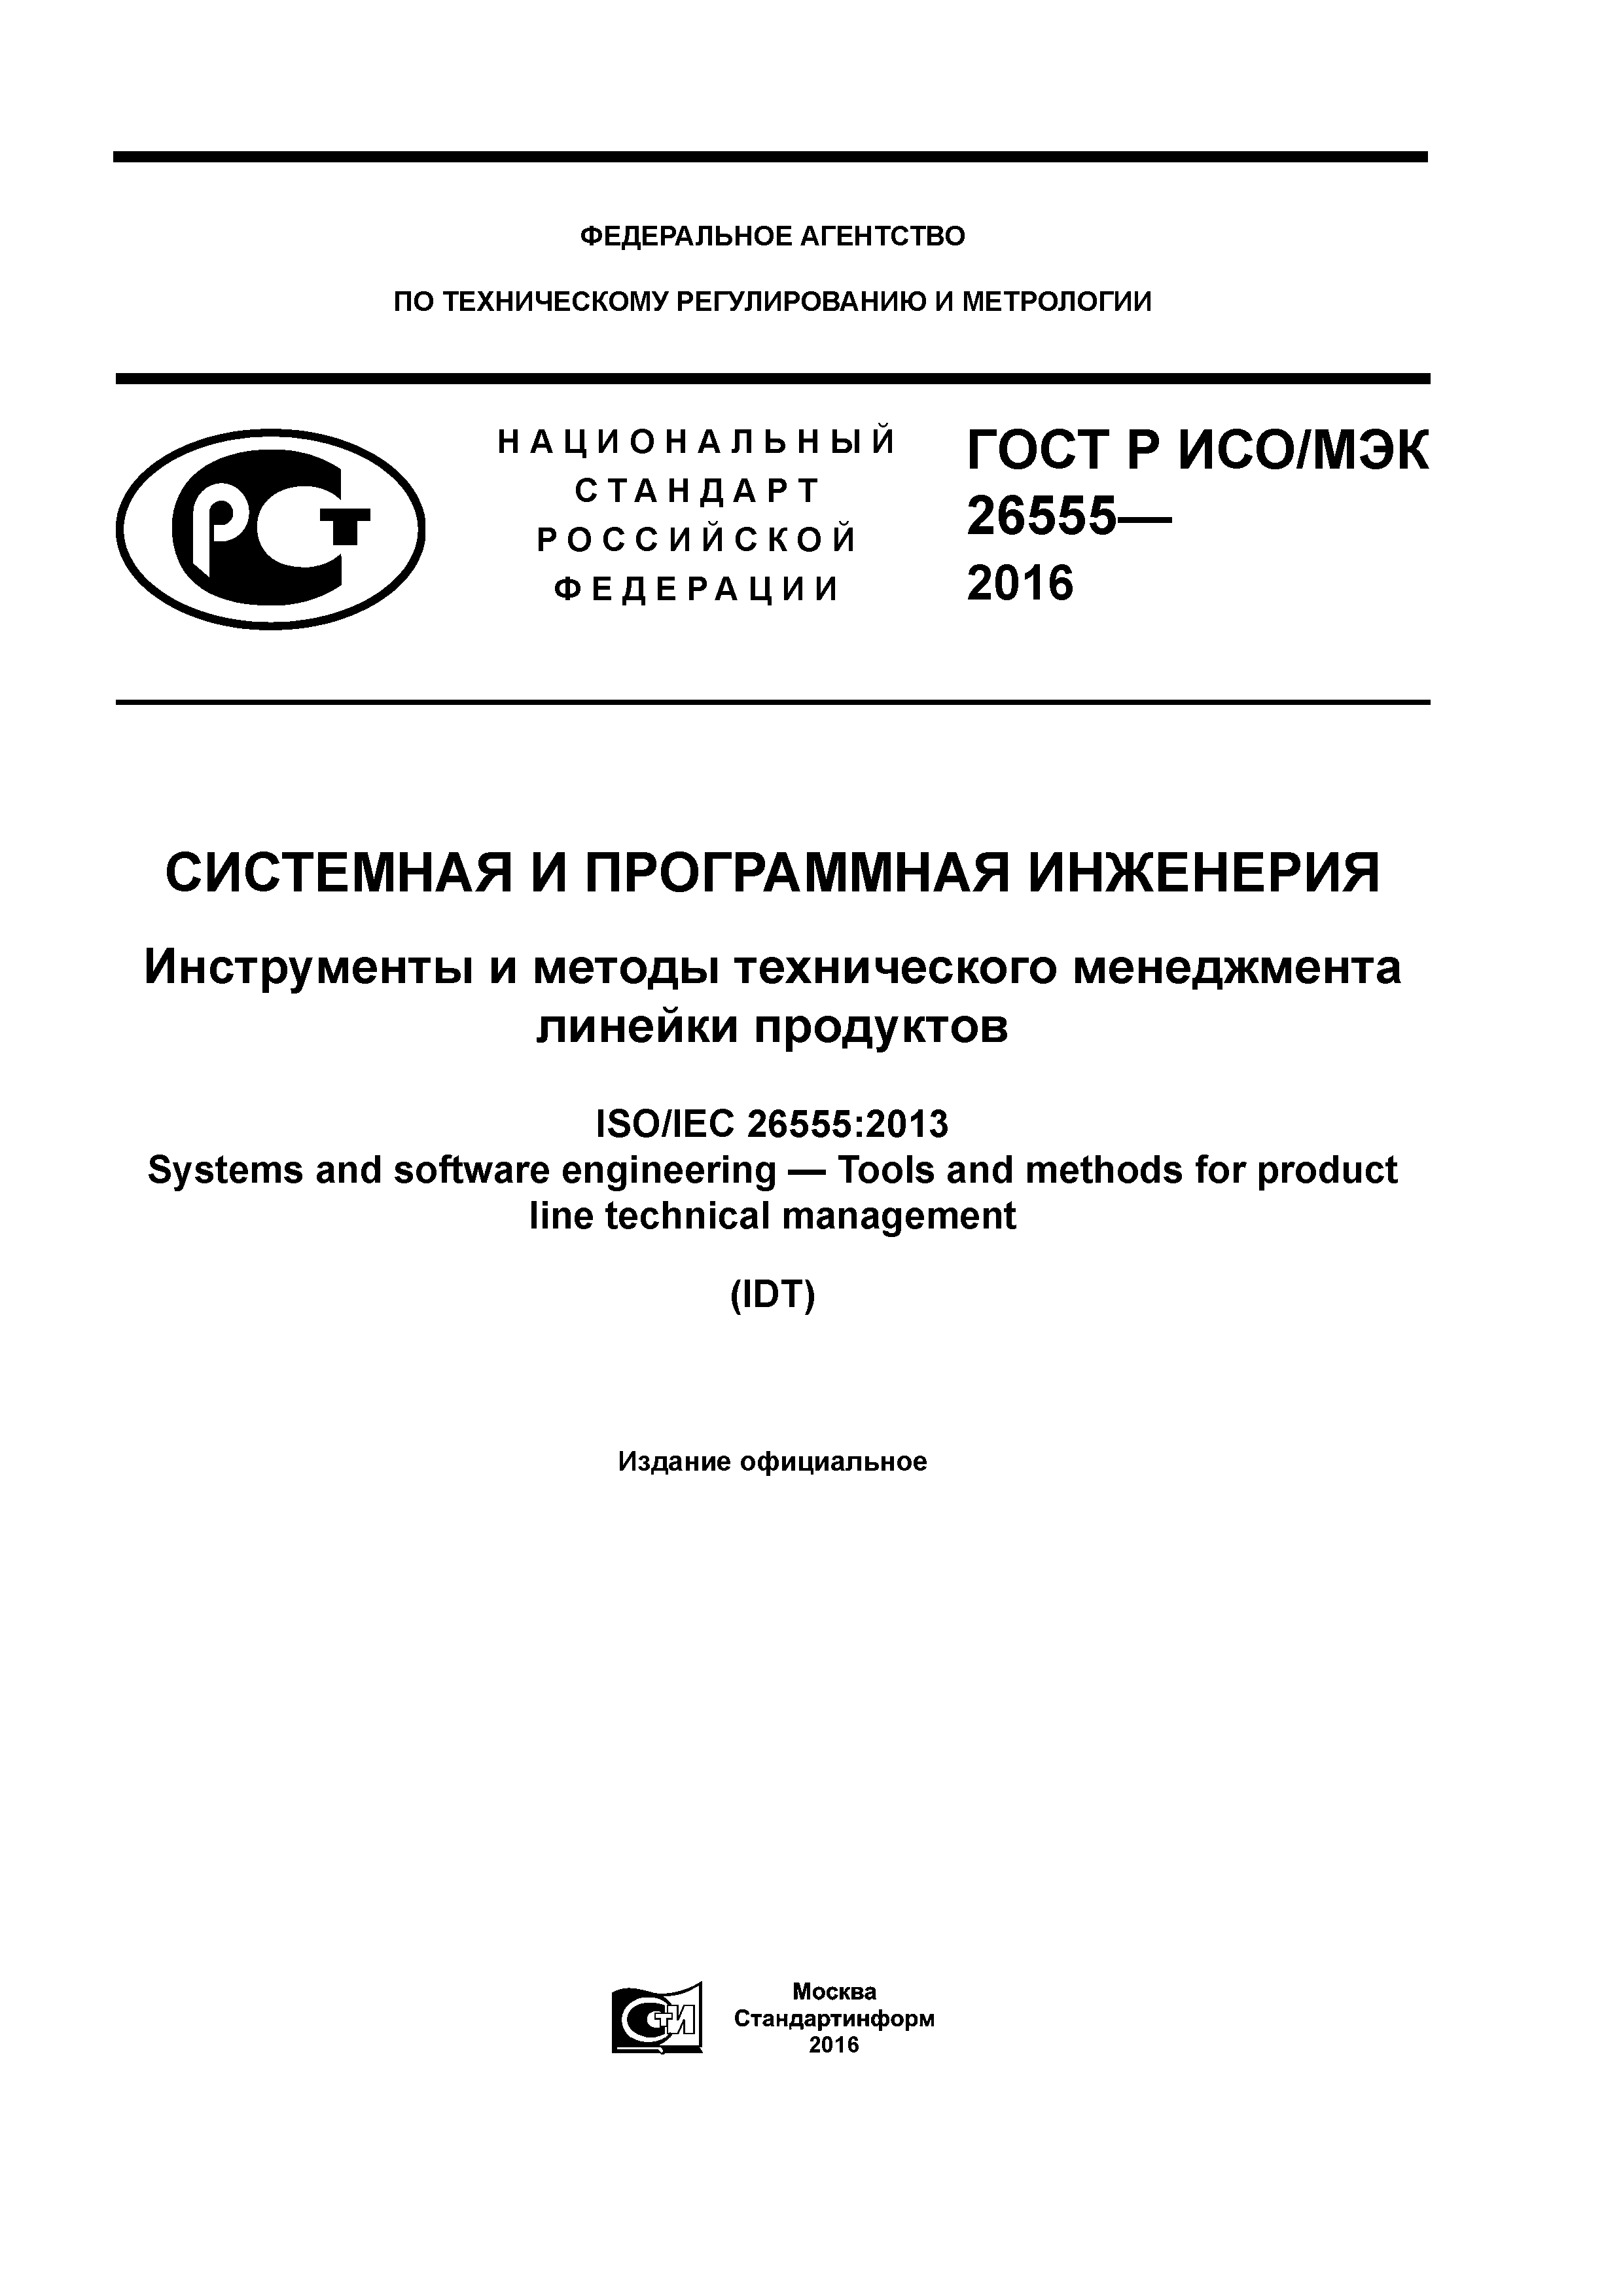 ГОСТ Р ИСО/МЭК 26555-2016